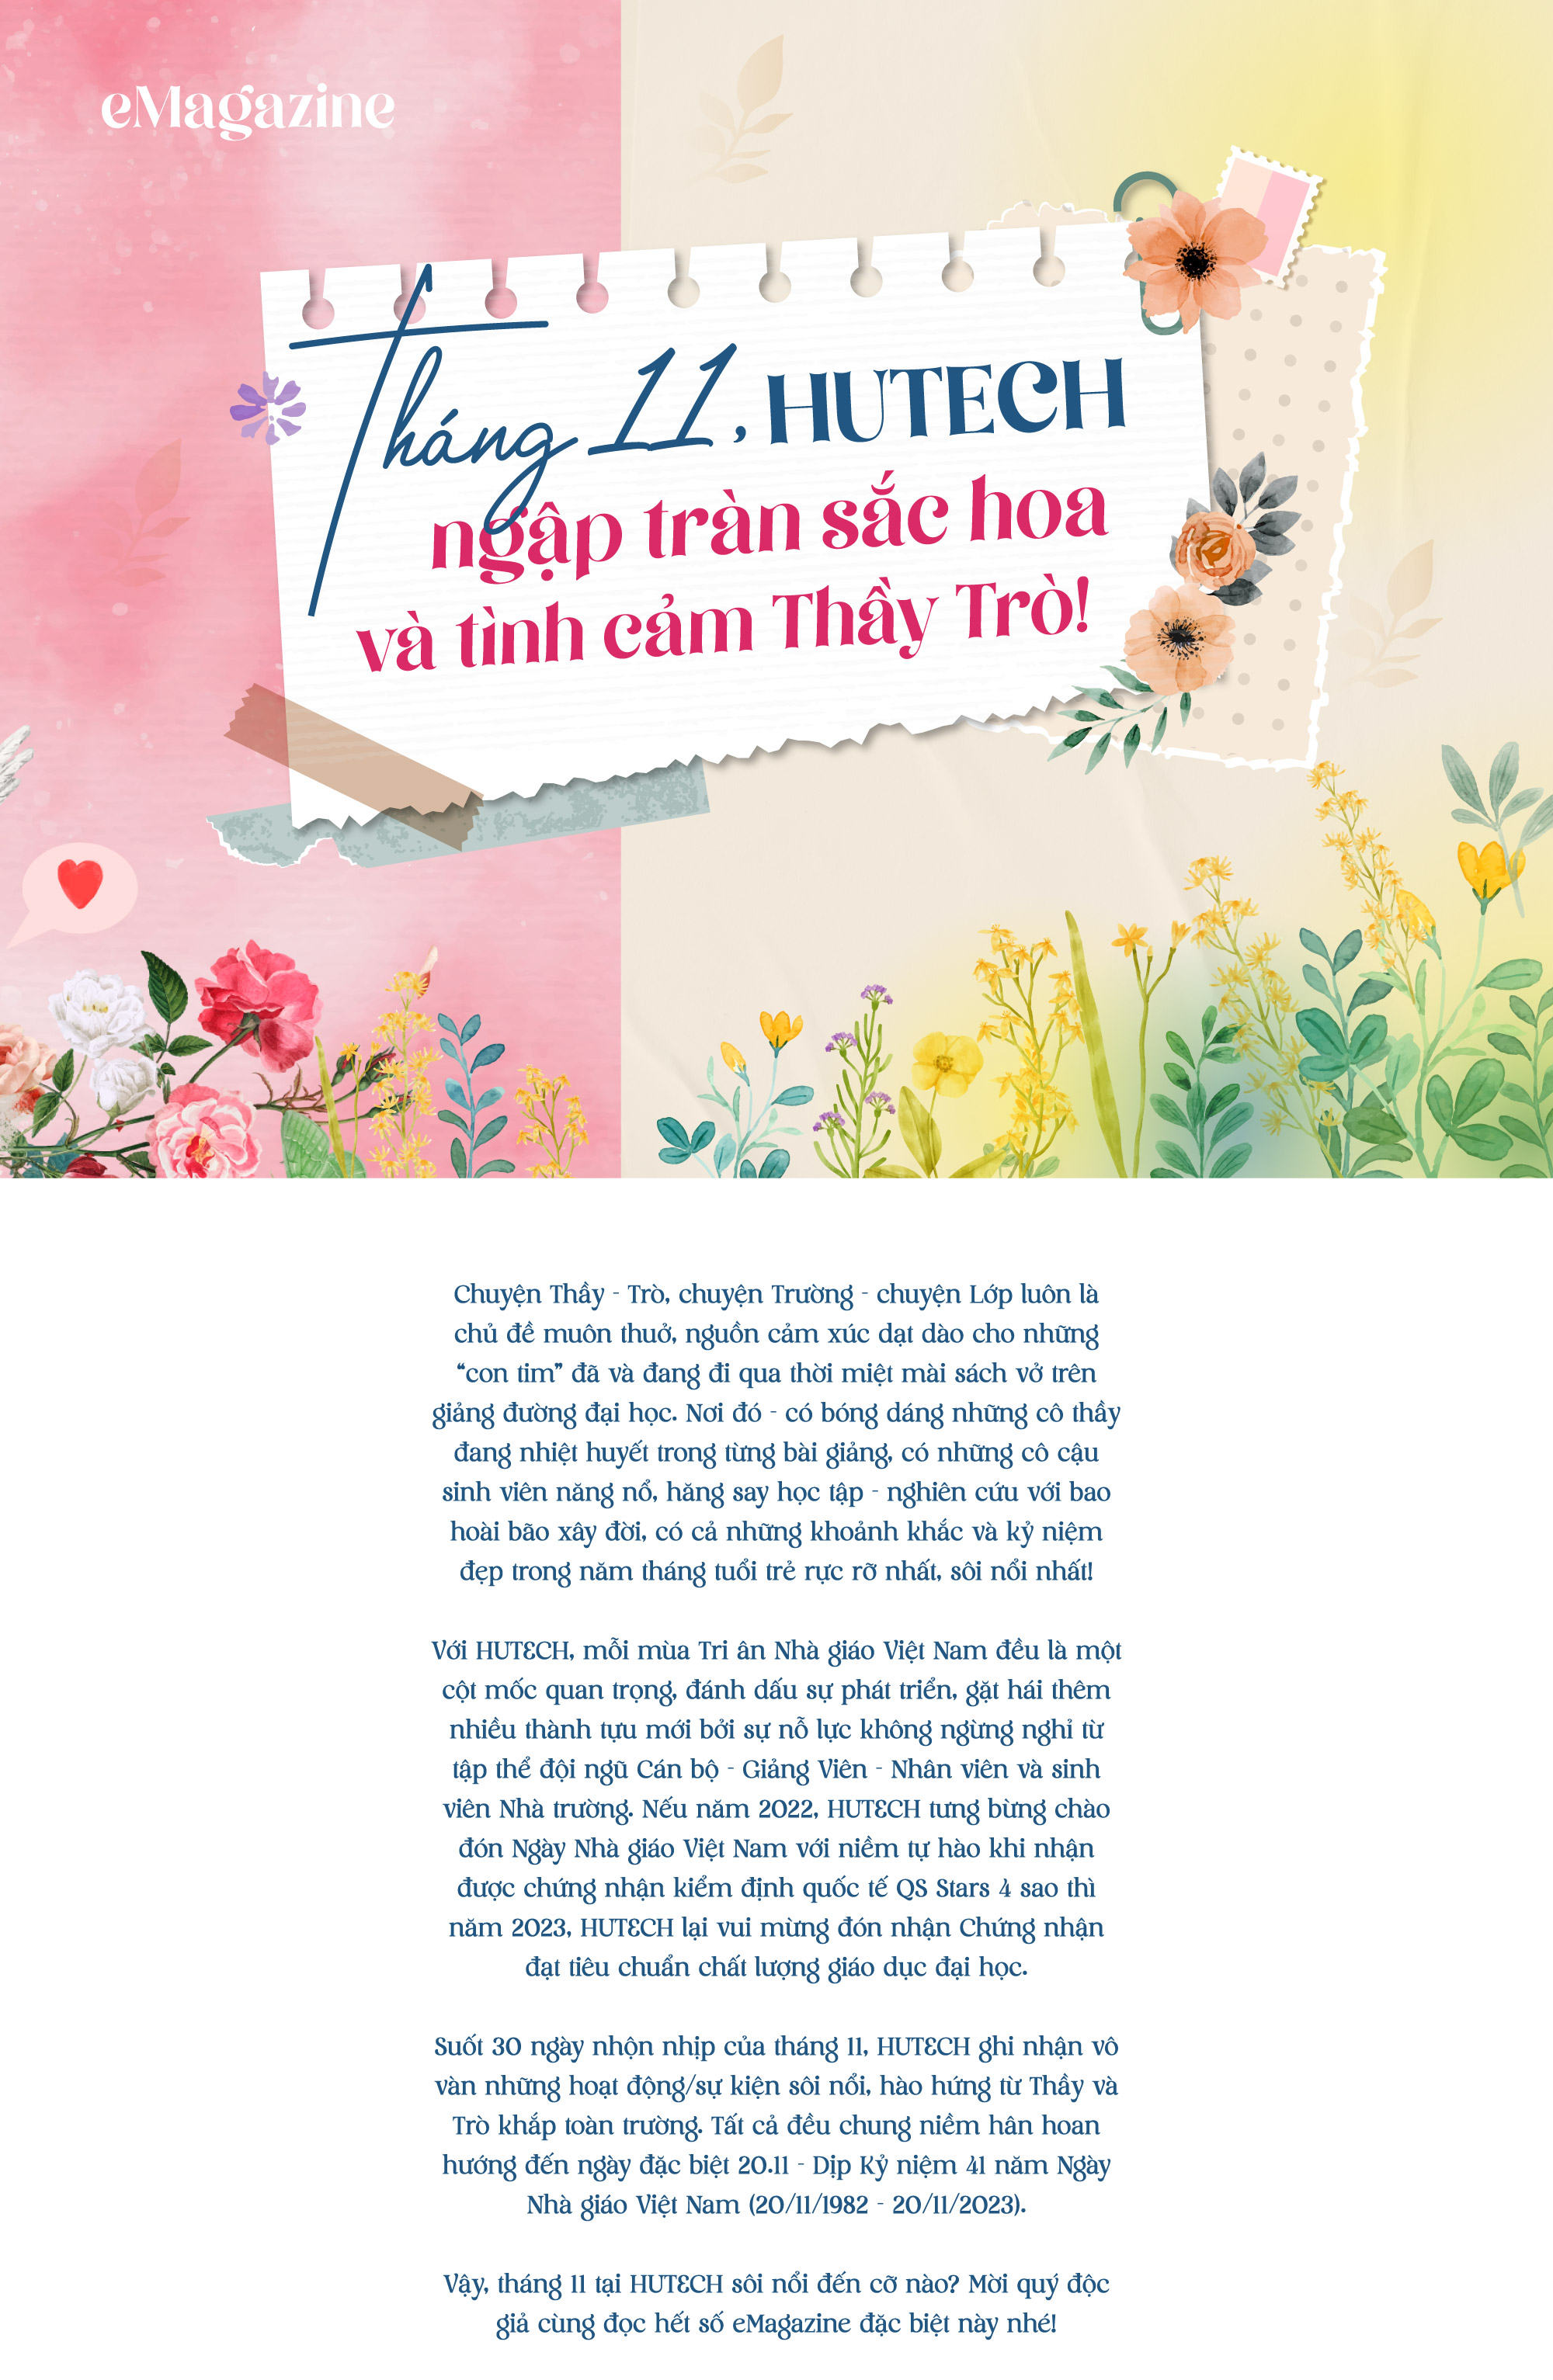 eMagazine: Tháng 11, HUTECH ngập tràn sắc hoa và tình cảm Thầy Trò! 2